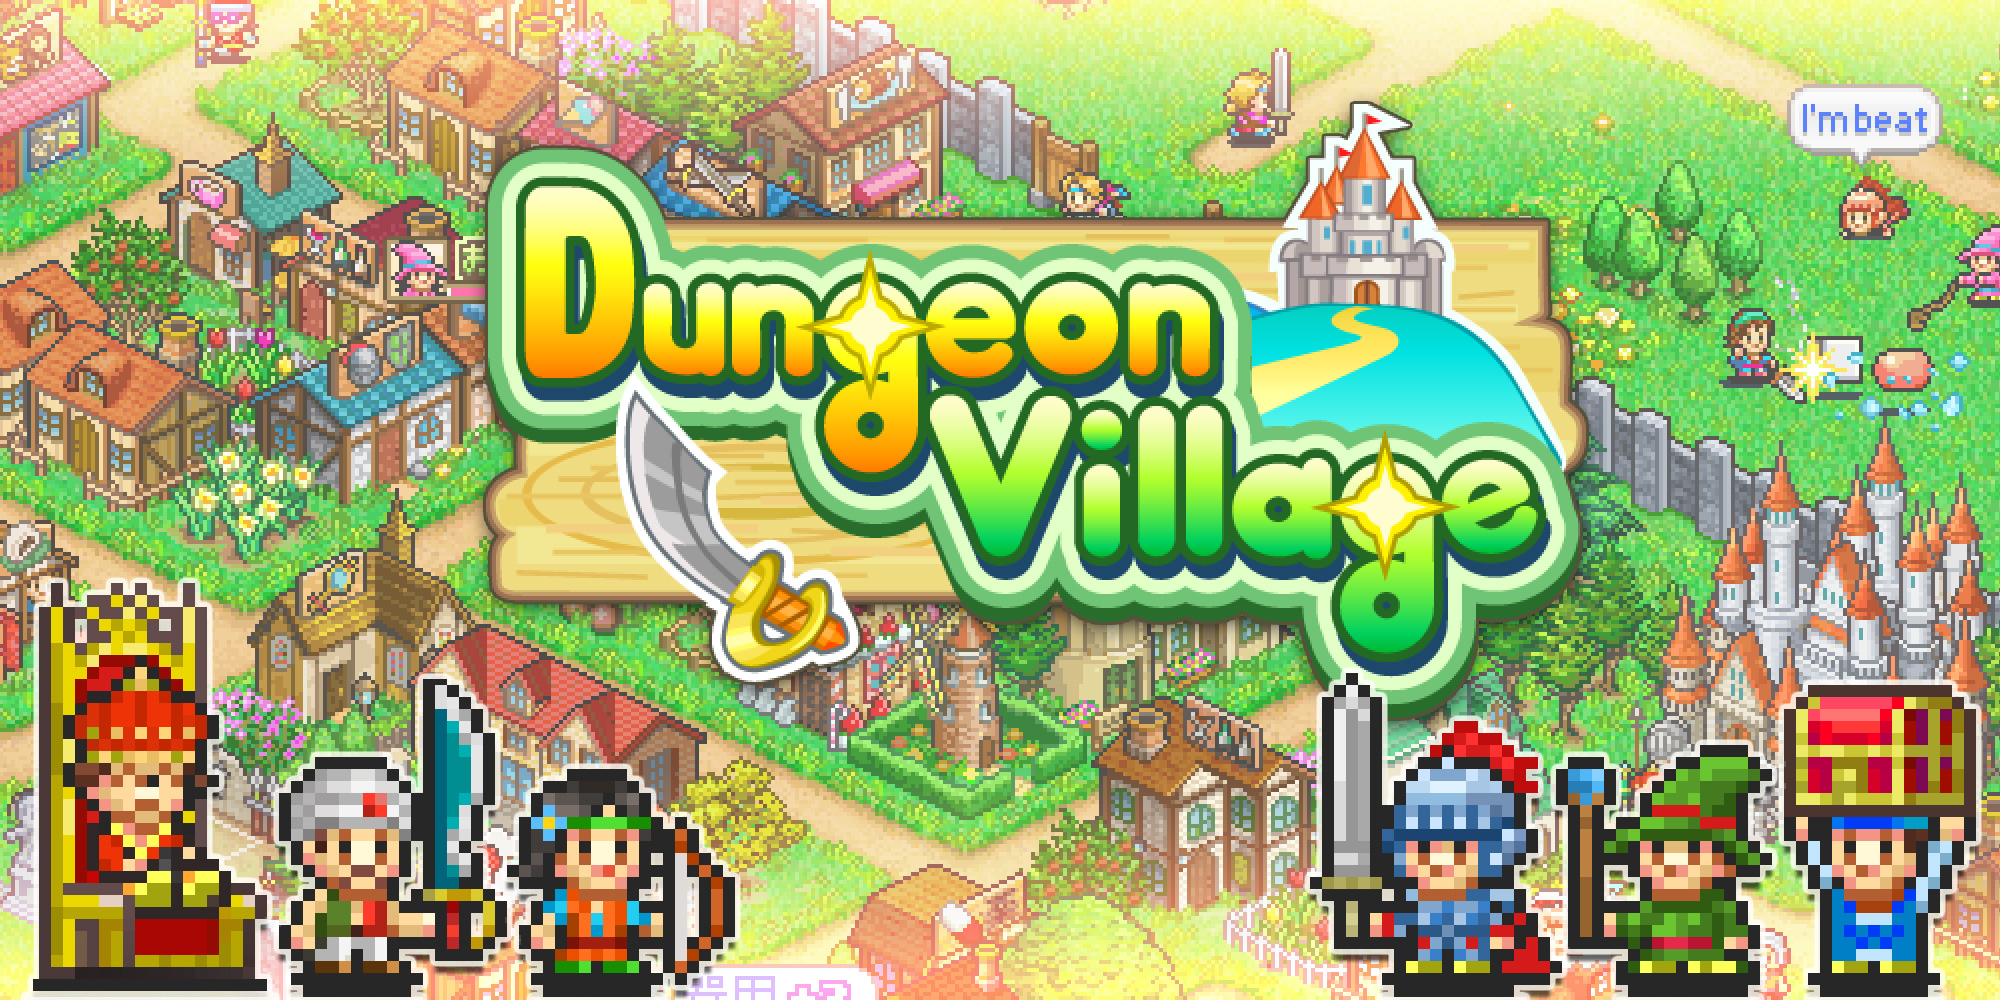 Dungeon village 2